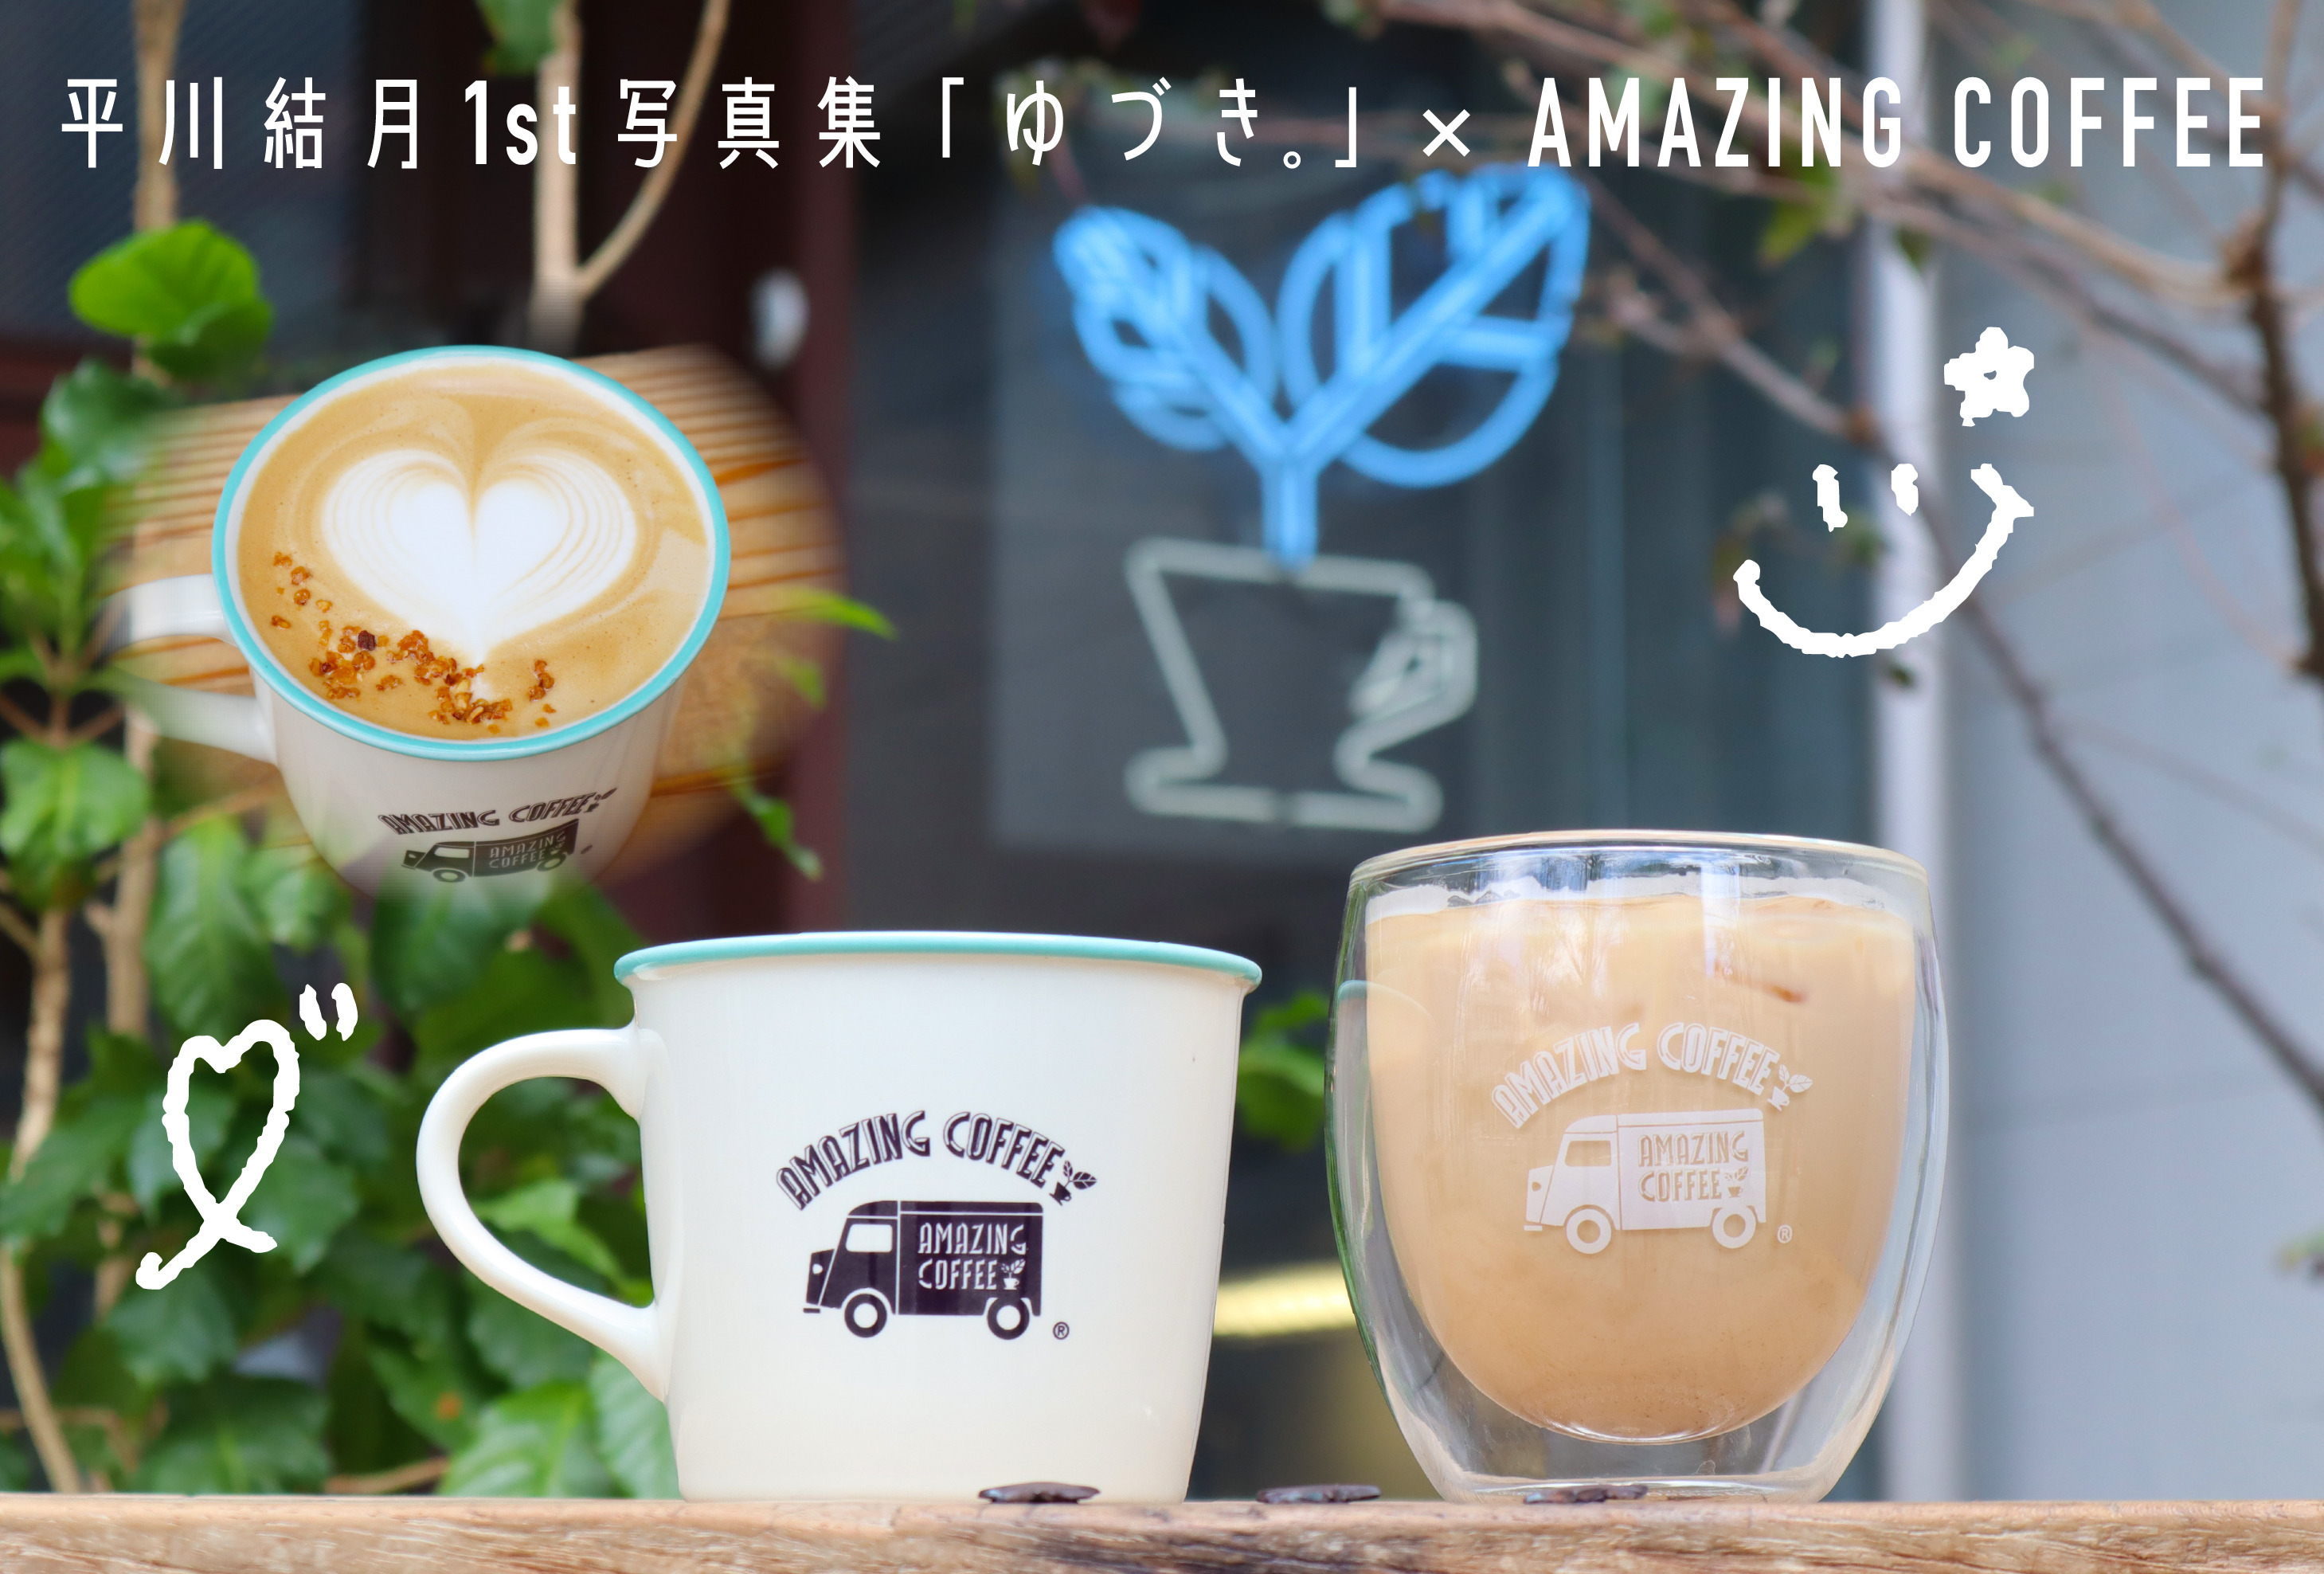 【5月1日(水)START!!】平川結⽉1st写真集「ゆづき。」×AMAZING COFFEE スペシャルコラボレーション決定★